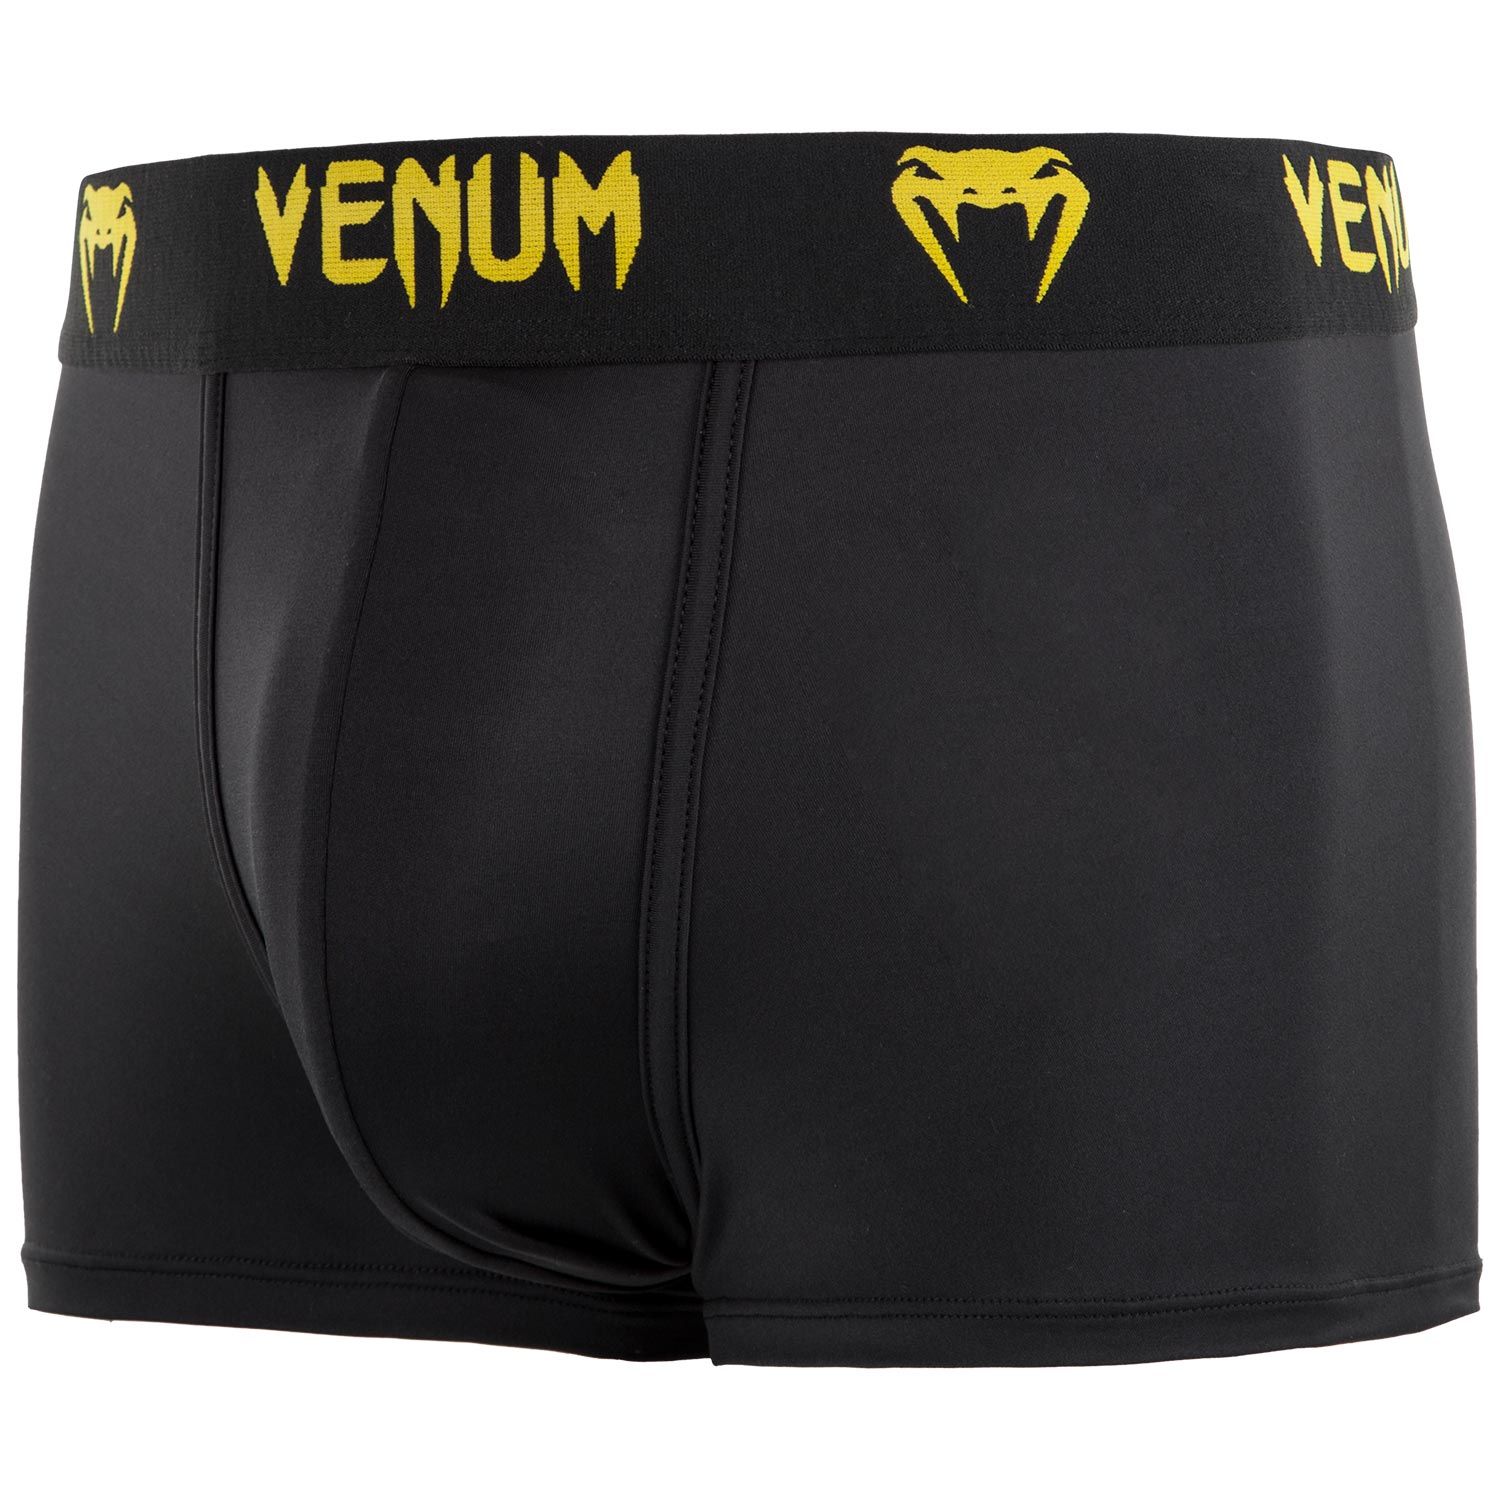 Boxer Venum Classic - Noir/Jaune